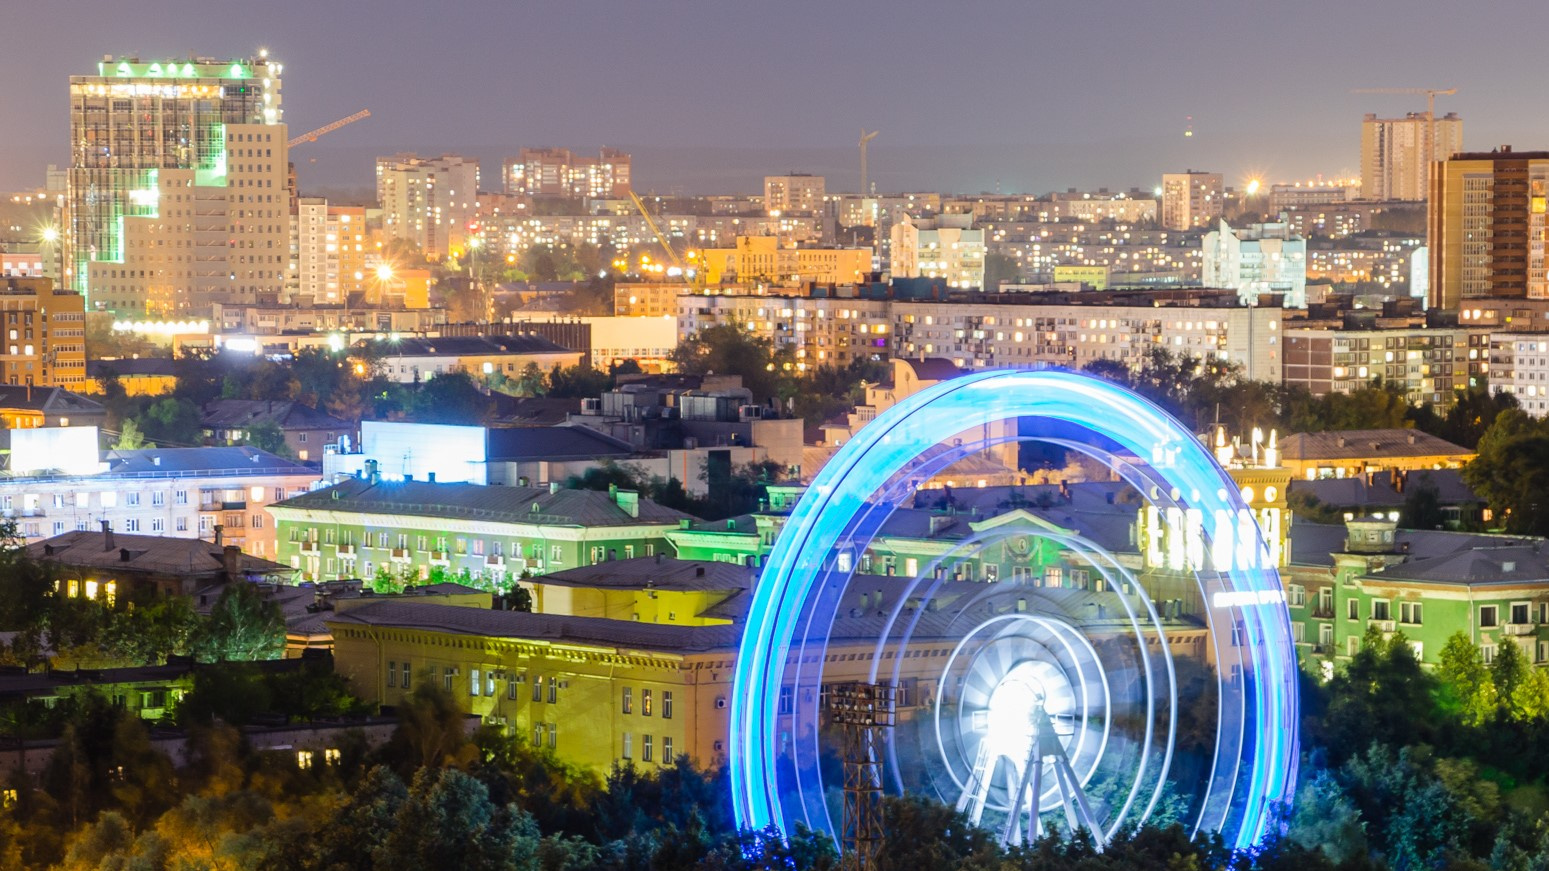 Парк Горького в Перми решил проводить гендерпати: колесо обозрения будет светиться розовым или голубым